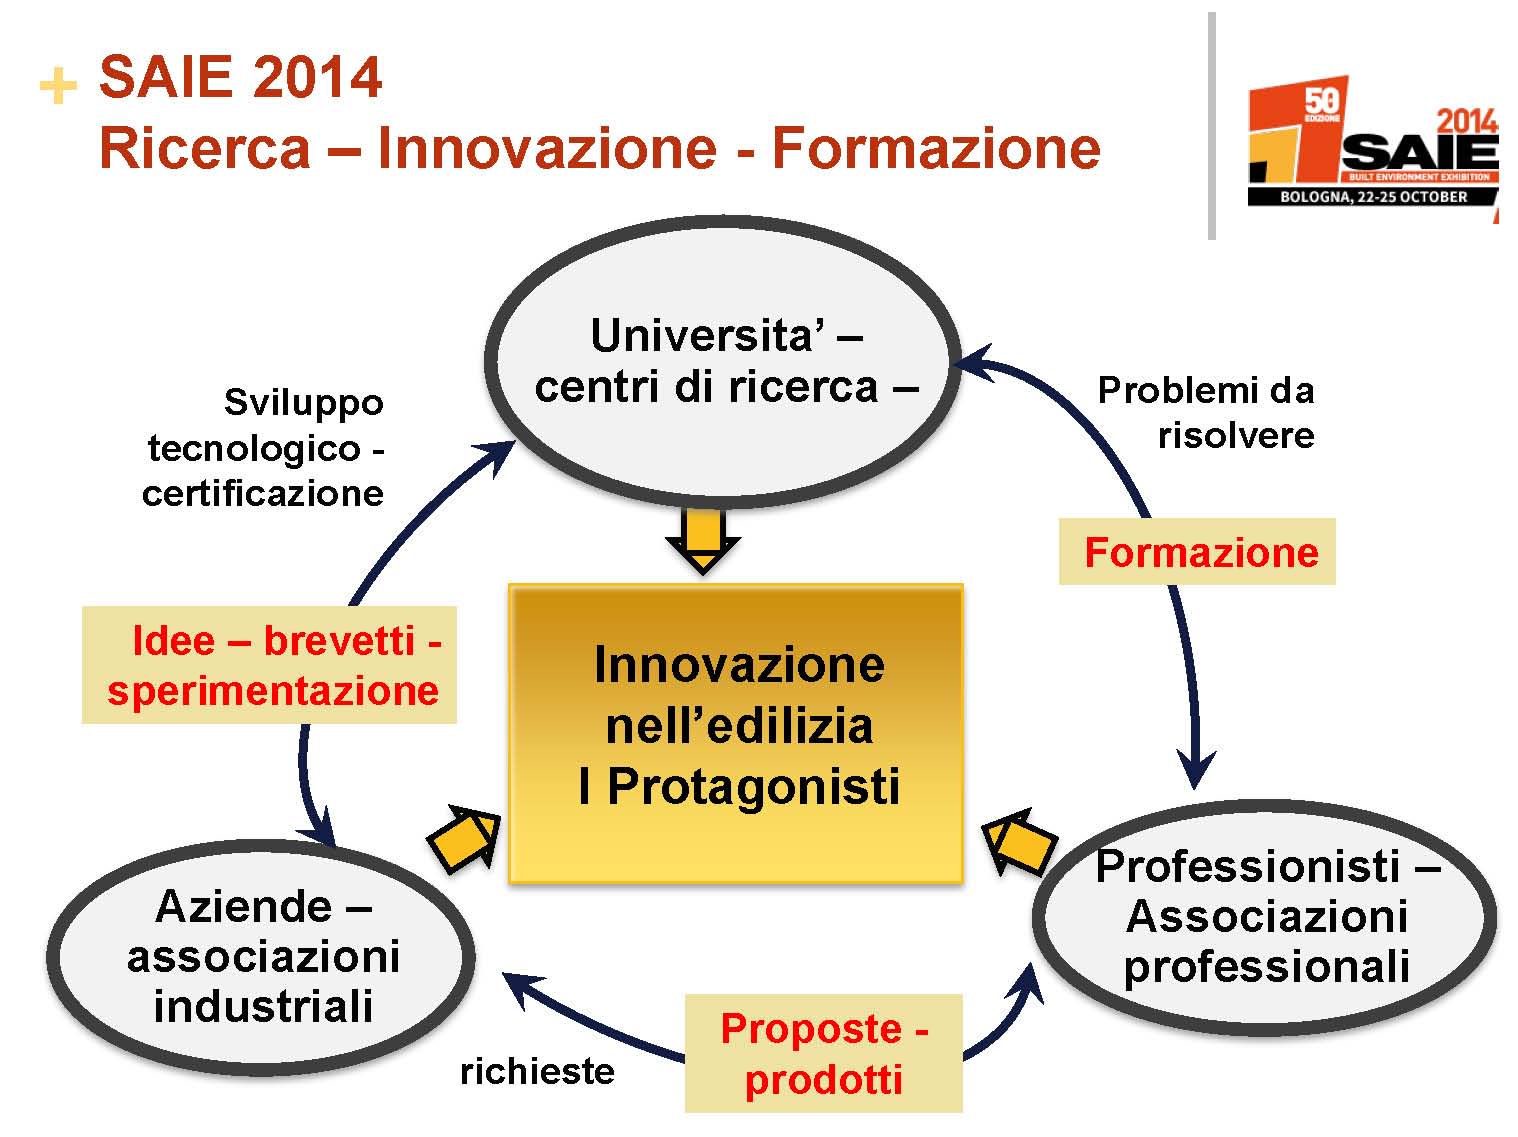 Presentazione_SAIE_2014_conf_stampa_savoia (1)_Pagina_03